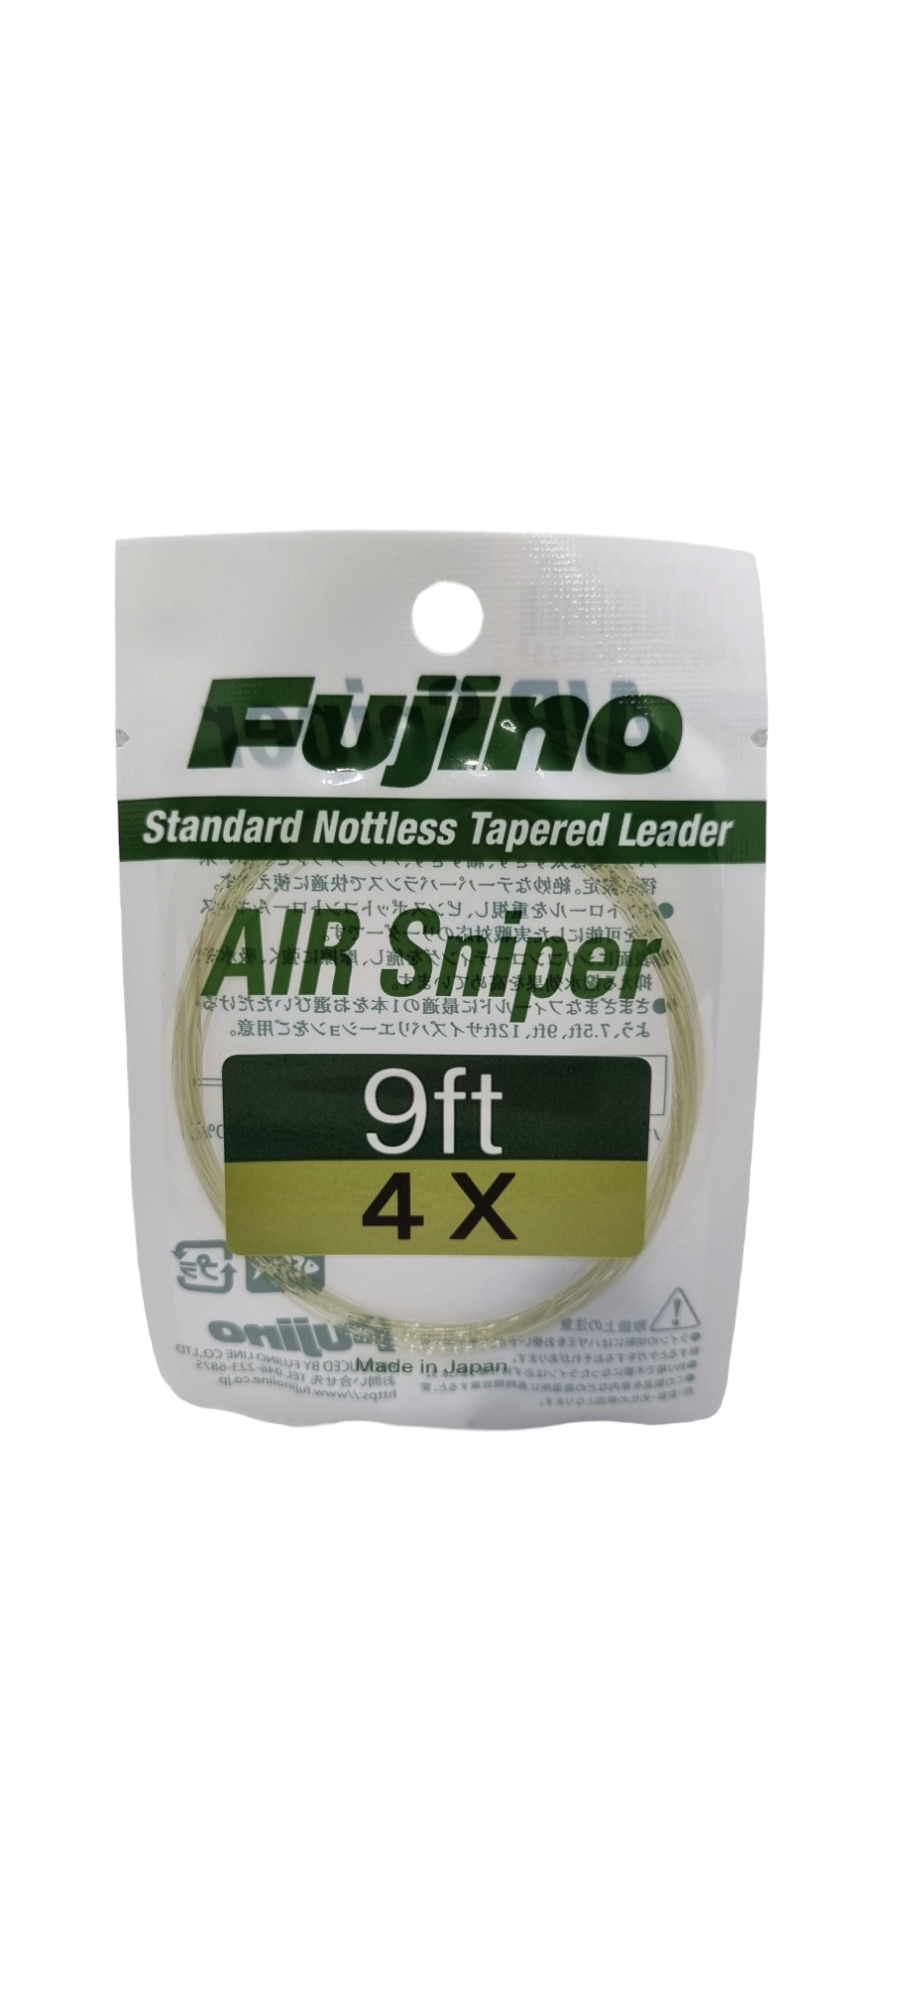 FUJINO Air Sniper.